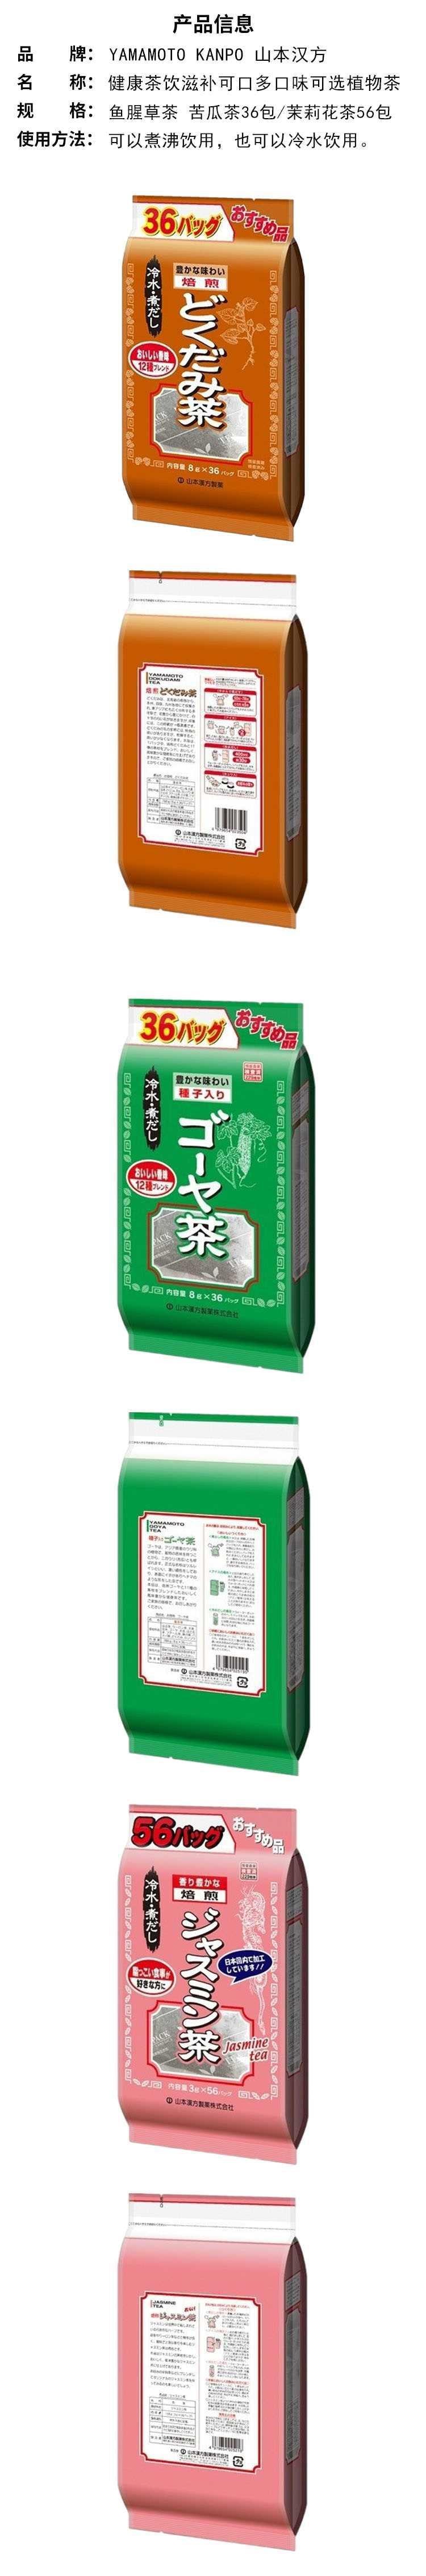 【日本直效郵件】YAMAMOTO山本漢方製藥 混合風味苦瓜茶 8g*36包